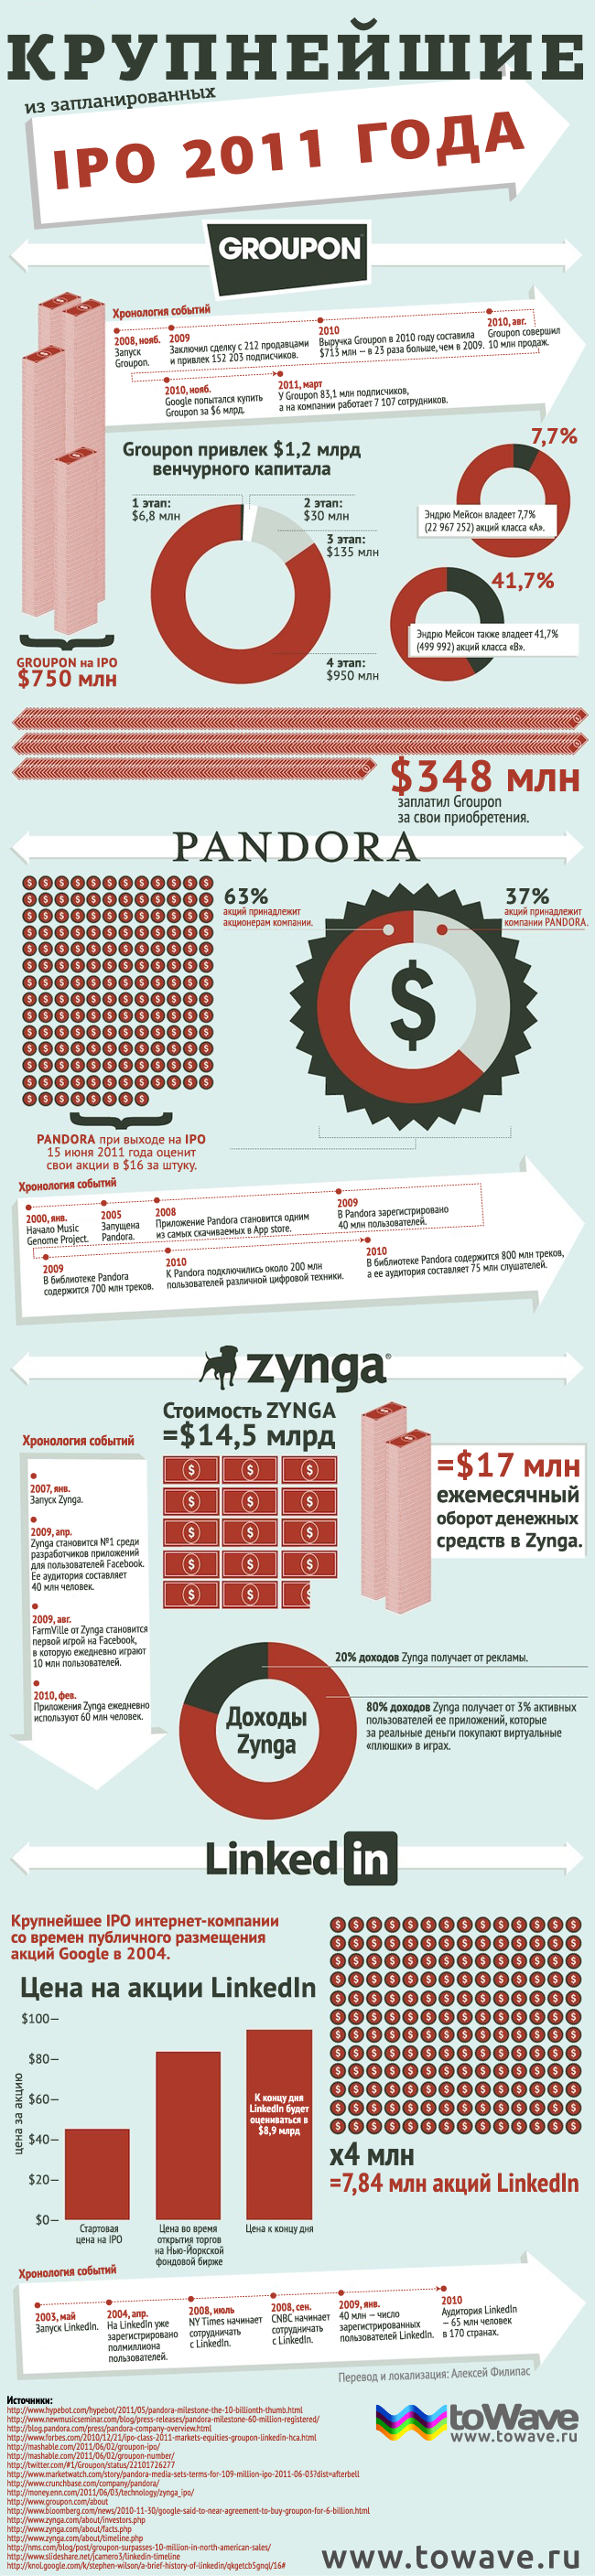 Инфографика: крупнейшие IPO 2011 года